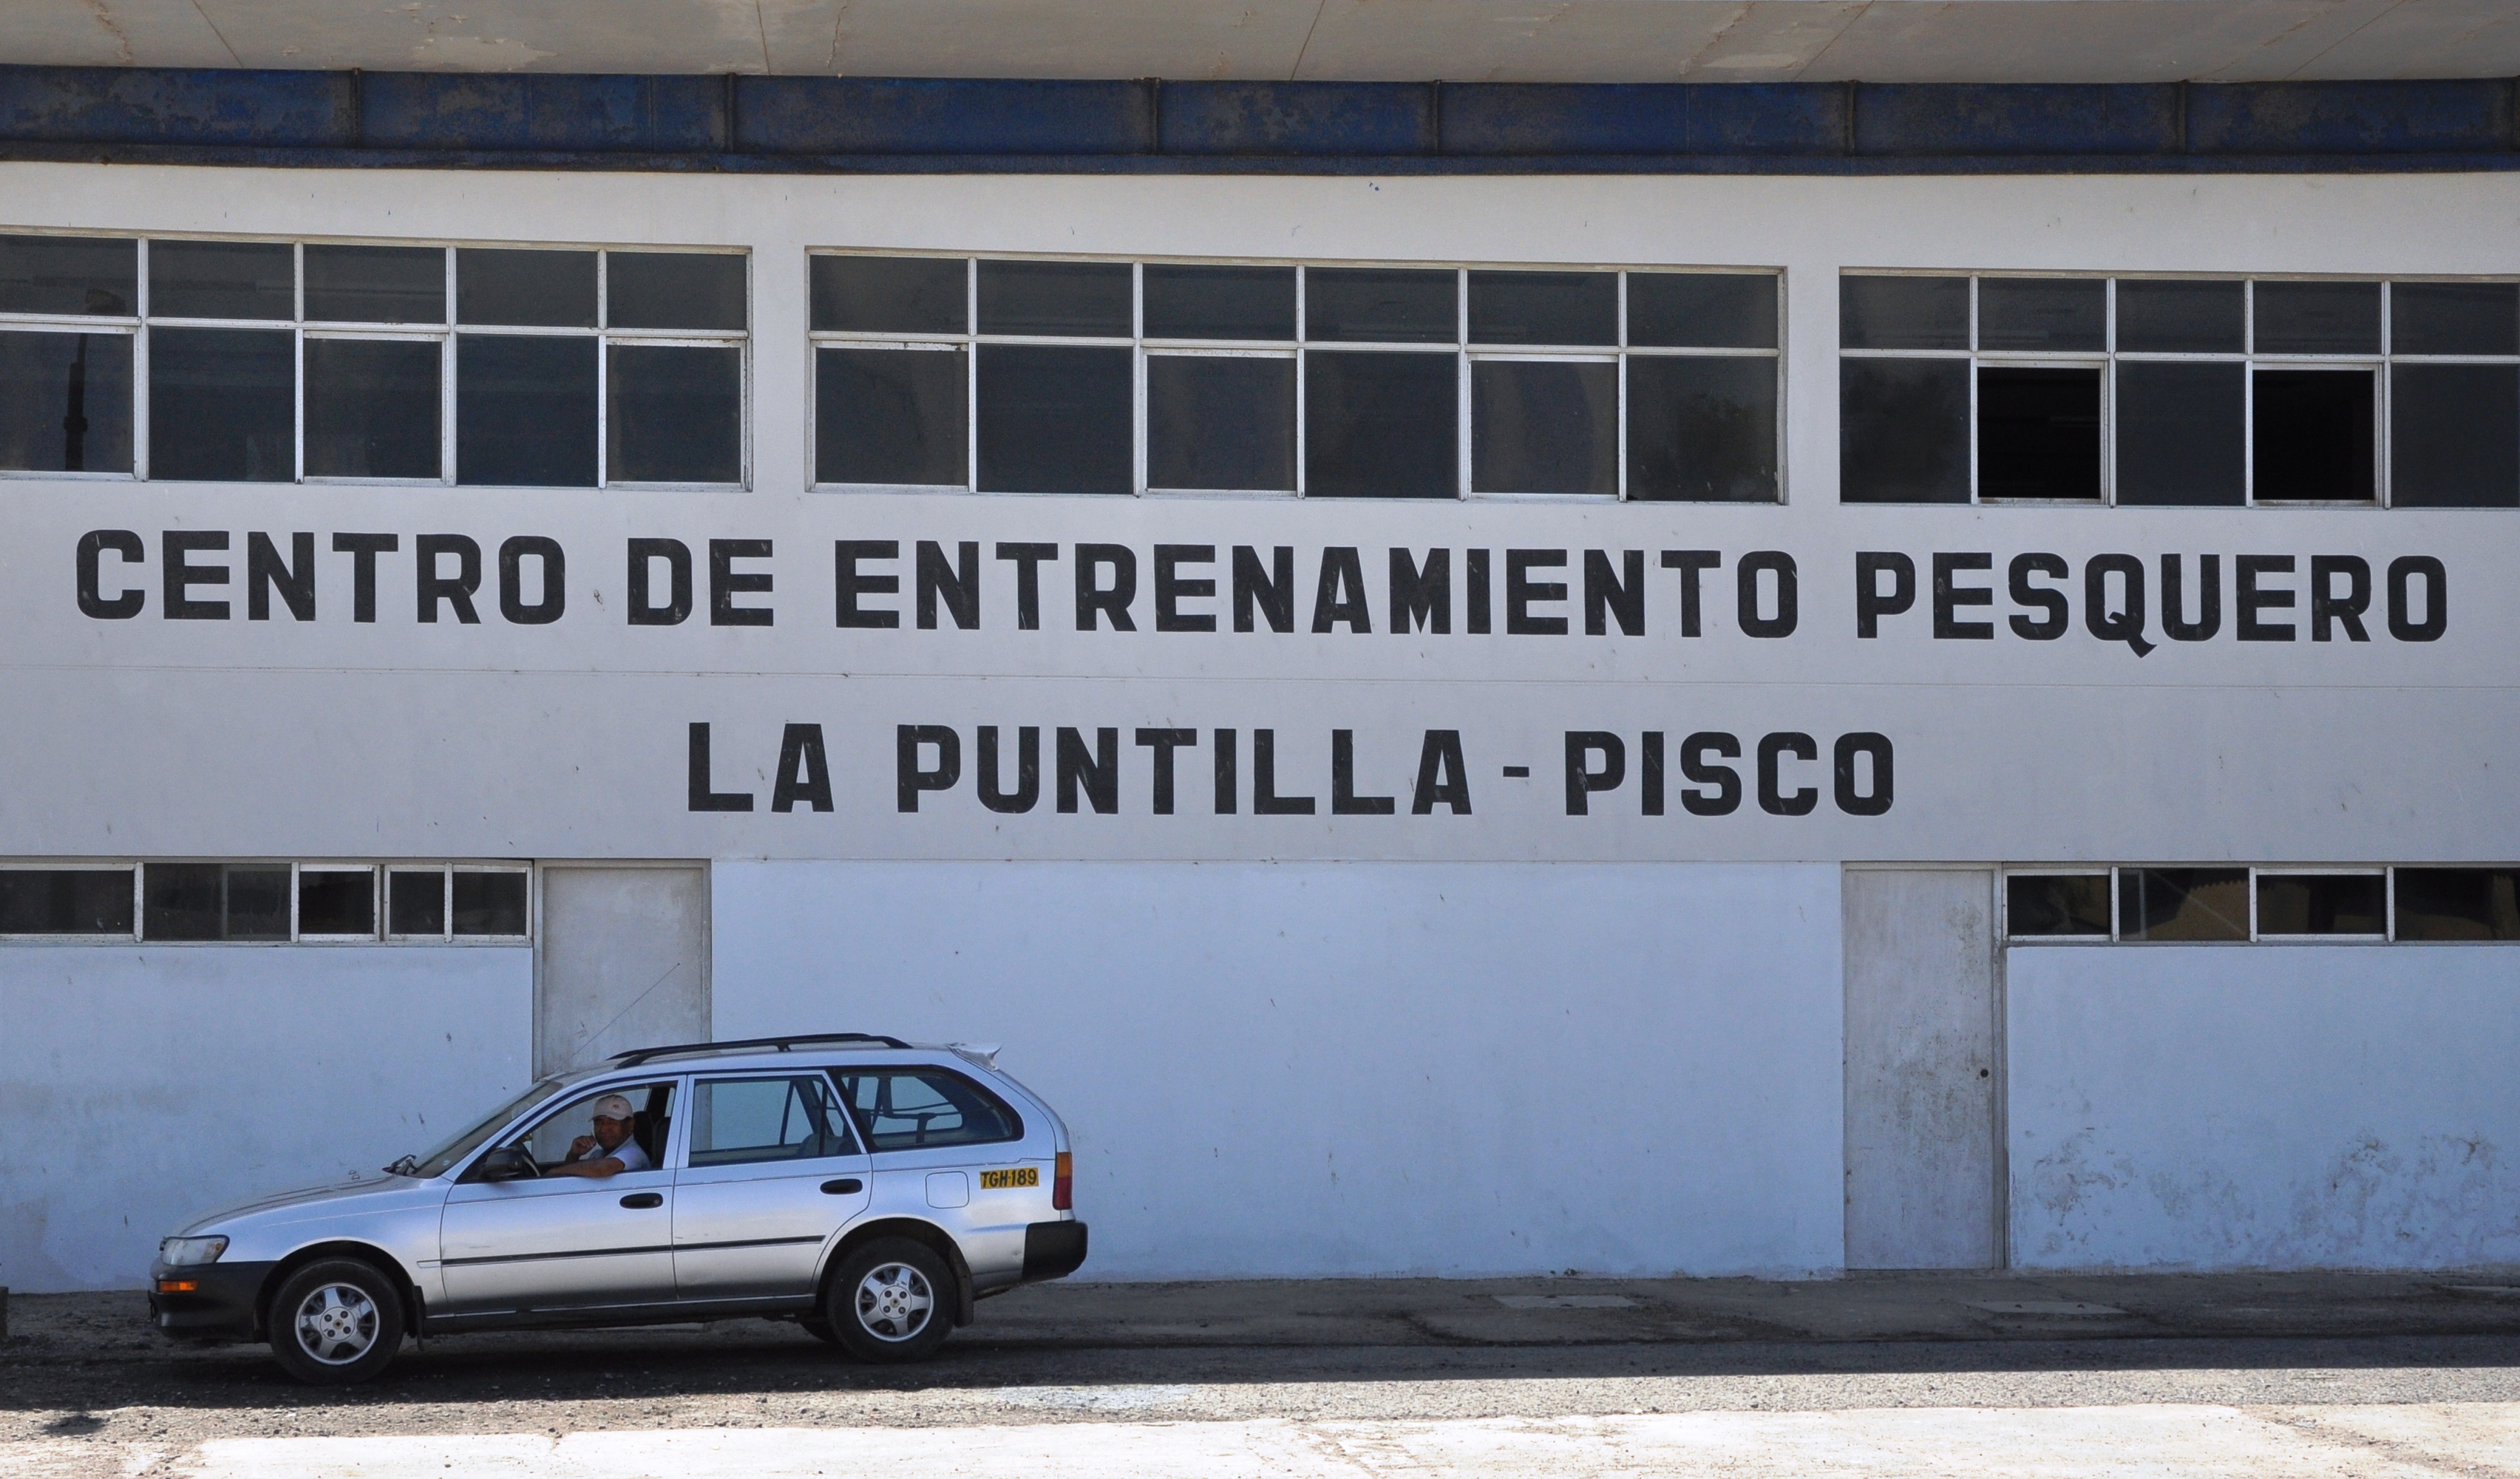 Training Centre. La Puntilla, Pisco